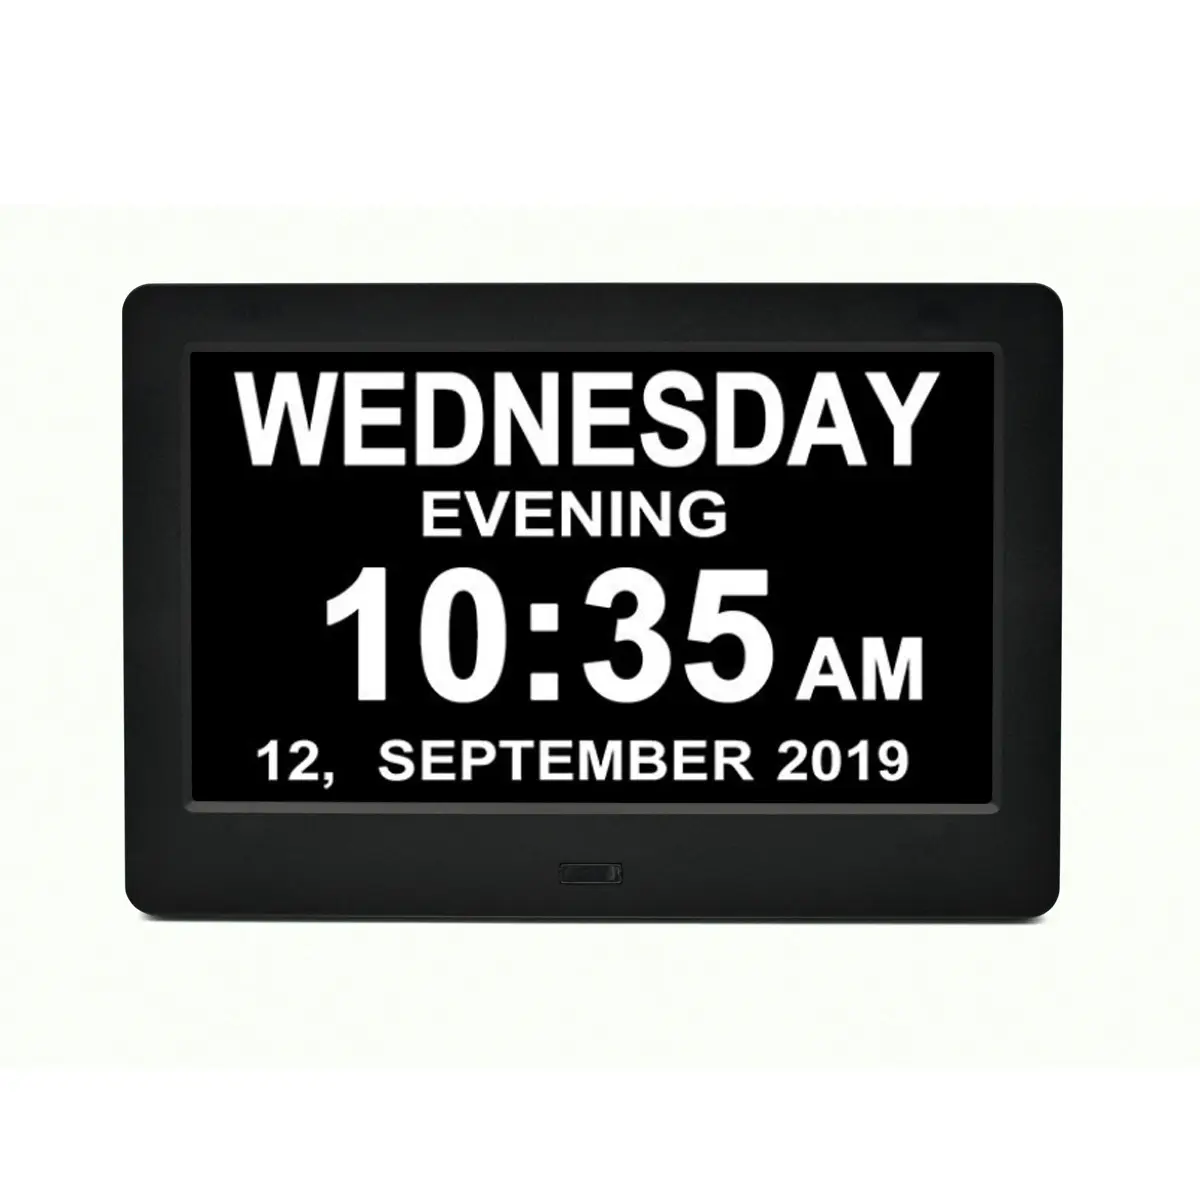 2022 напоминание большой дисплей потеря памяти 7 дюймов ЖК-дисплей с цифровым календарем день часы для слабоумия или болезнь пожилых людей пожилого возраста